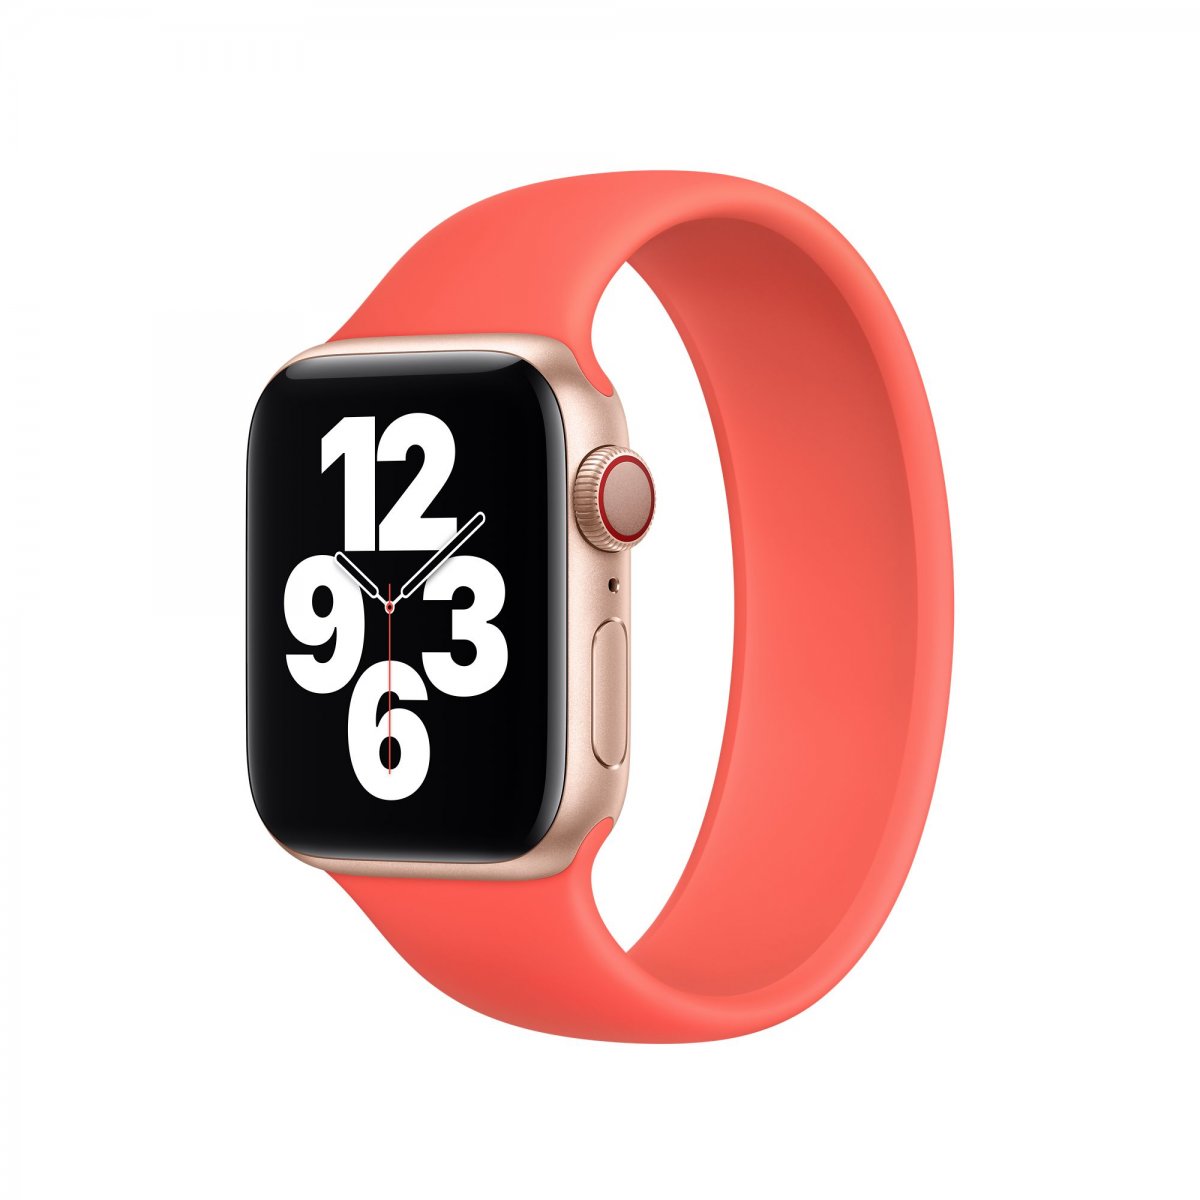 Řemínek iMore Solo Loop Apple Watch Series 1/2/3 42mm - Citrusově růžová (S)